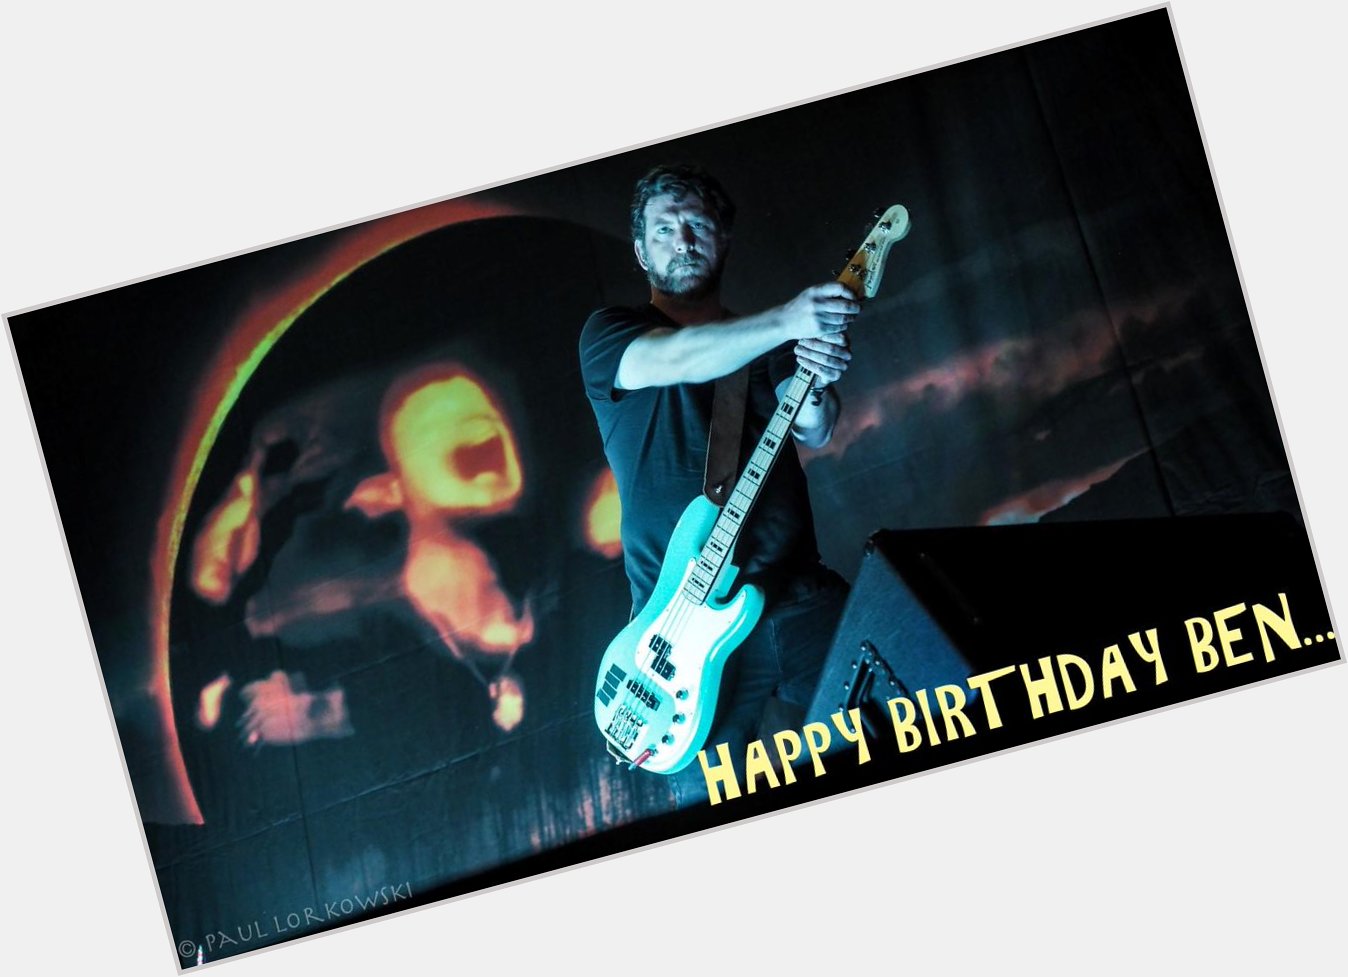 Happy birthday to Ben Shepherd of Soundgarden. 